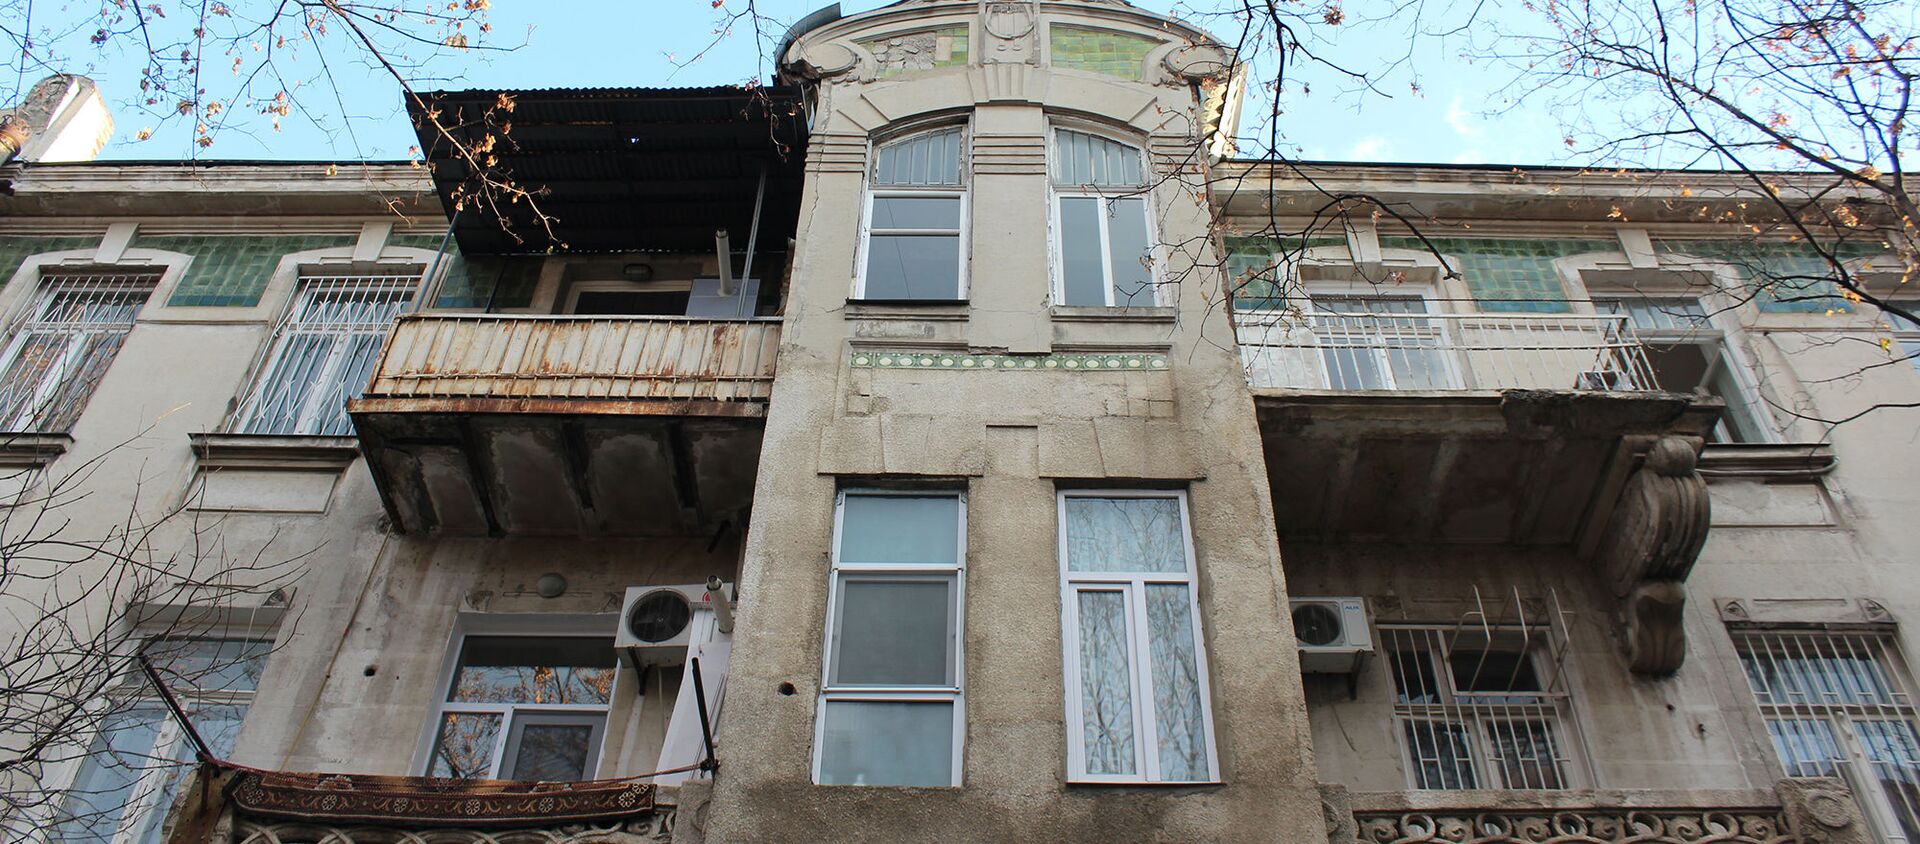 В доме две такие вот встроенные башенки - Sputnik Грузия, 1920, 13.12.2019